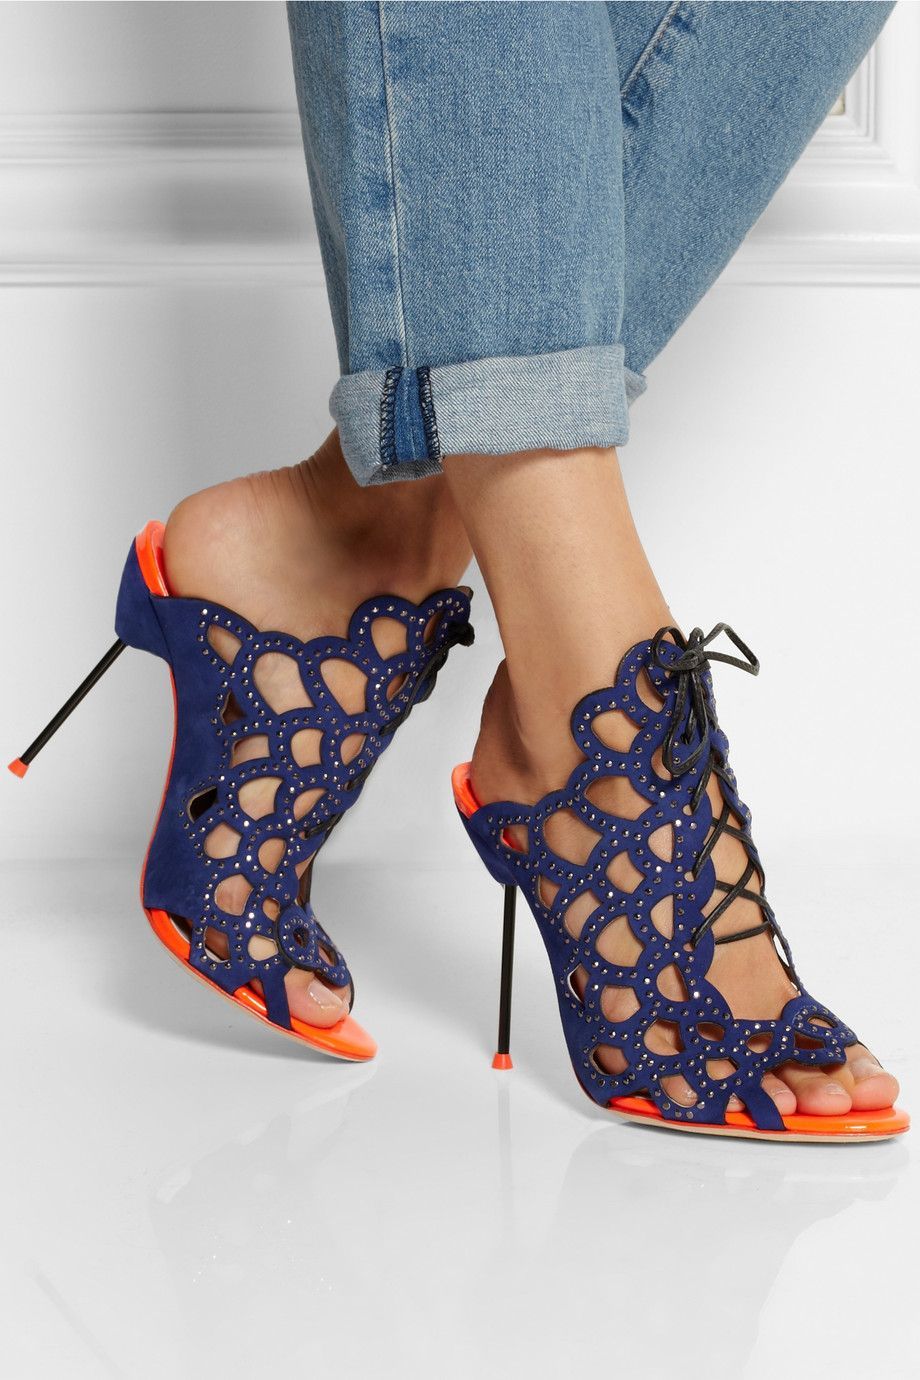 Sophia Webster | Greta crystal-embellished cutout suede sandals | NET-A-PORTER.COM